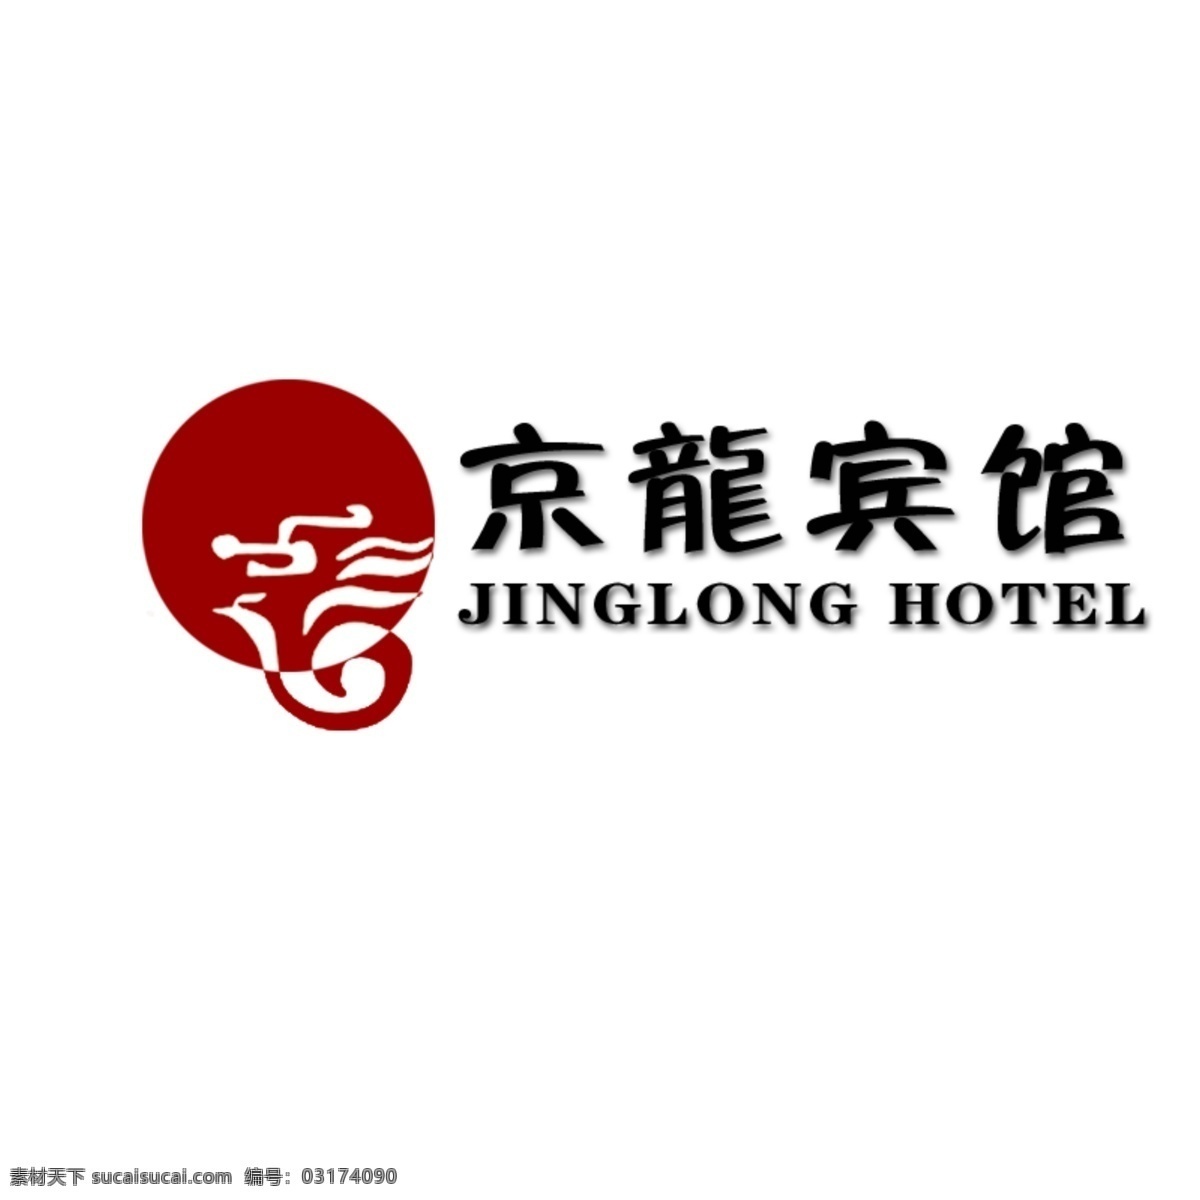 京龙 宾馆 logo 标志设计 广告设计模板 源文件 psd源文件 文件